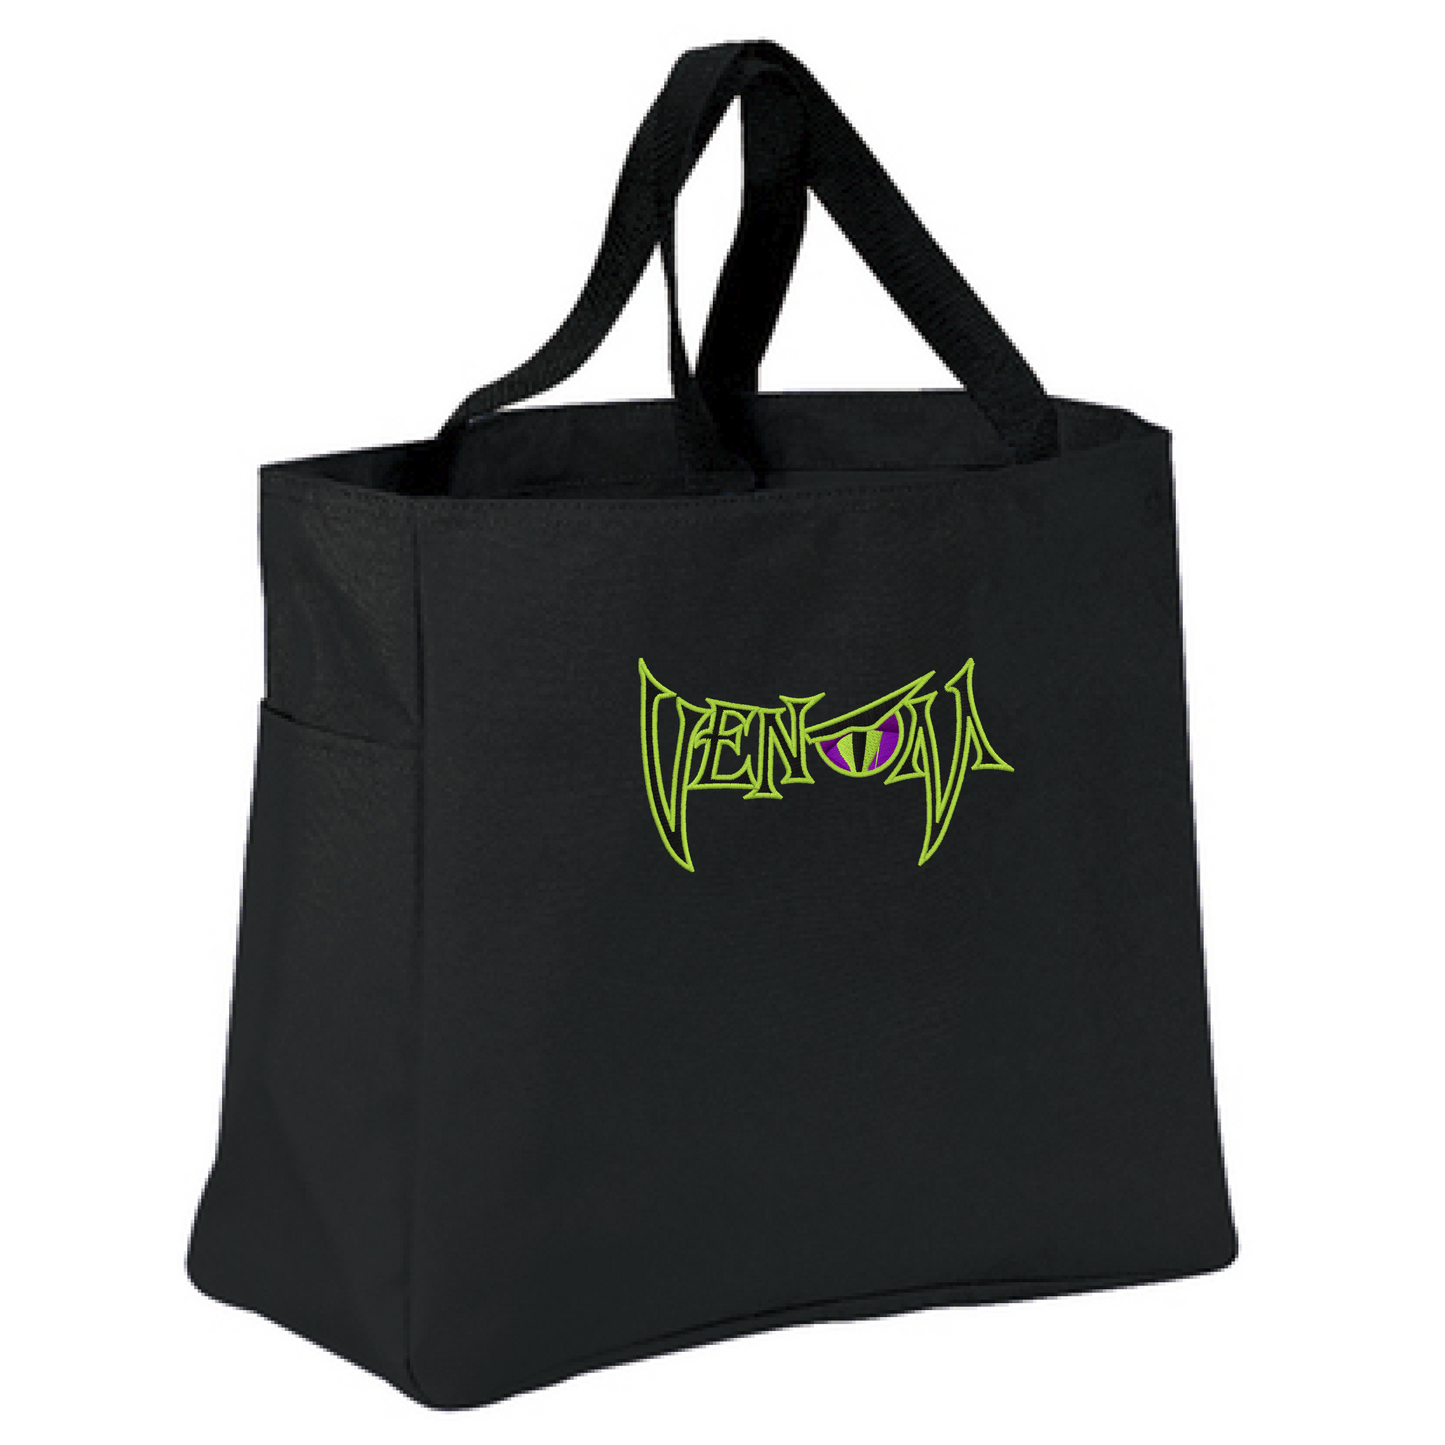 Venom Tote Bag